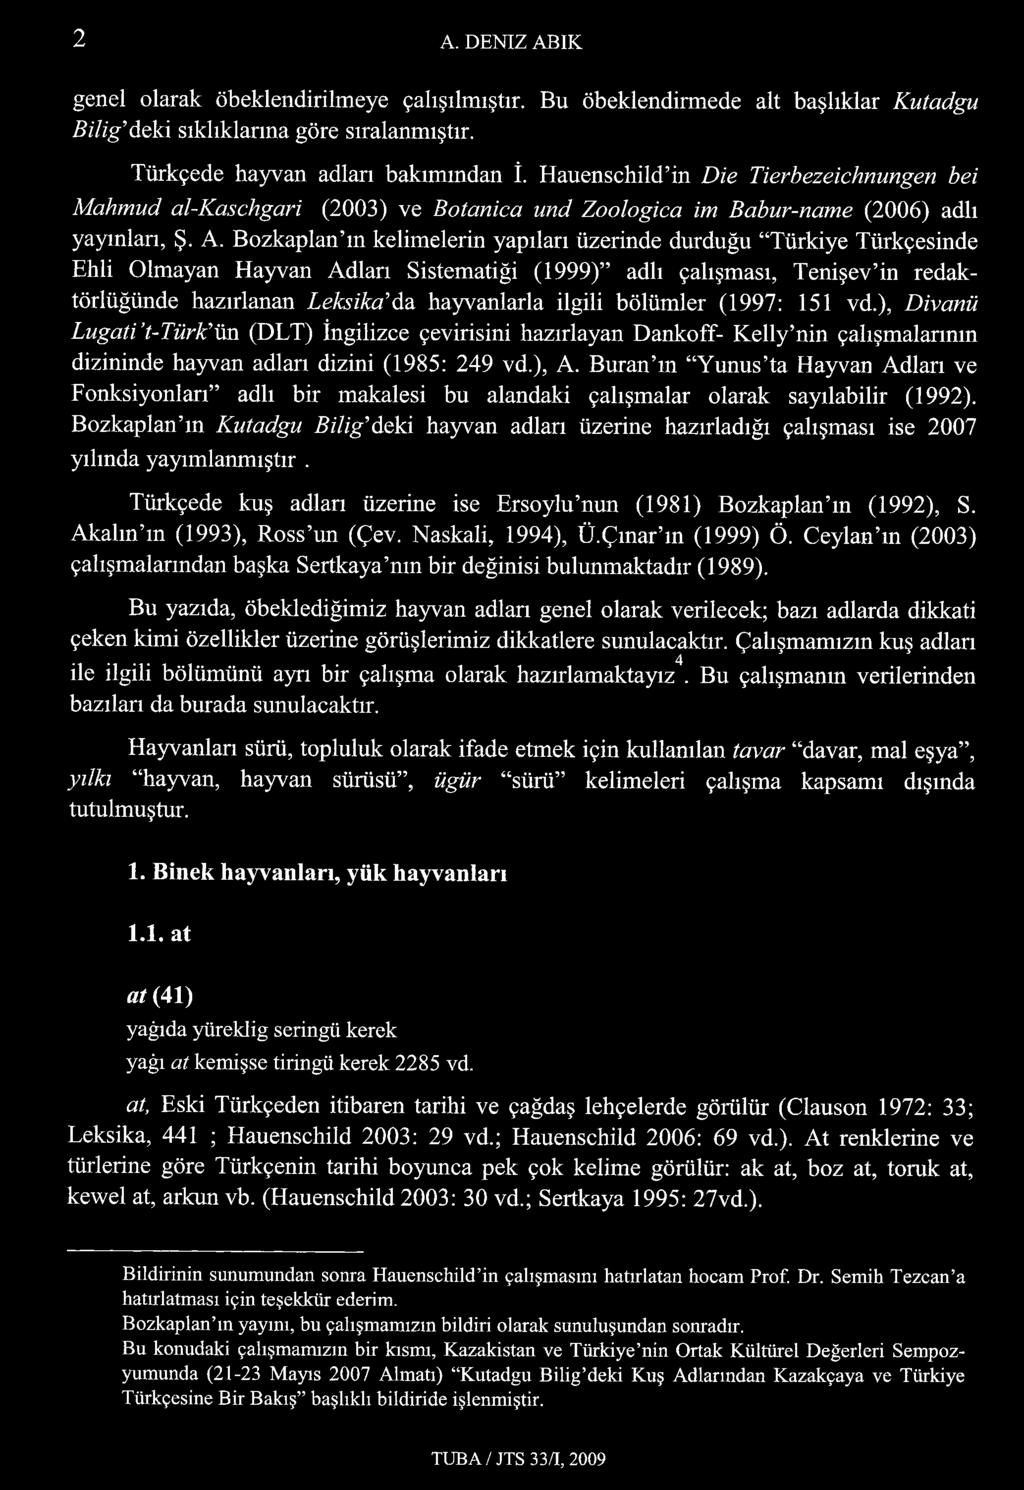 Bozkaplan m kelimelerin yapıları üzerinde durduğu Türkiye Türkçesinde Ehli Olmayan Hayvan Adları Sistematiği (1999) adlı çalışması, Tenişev in redaktörlüğünde hazırlanan Leksika da hayvanlarla ilgili